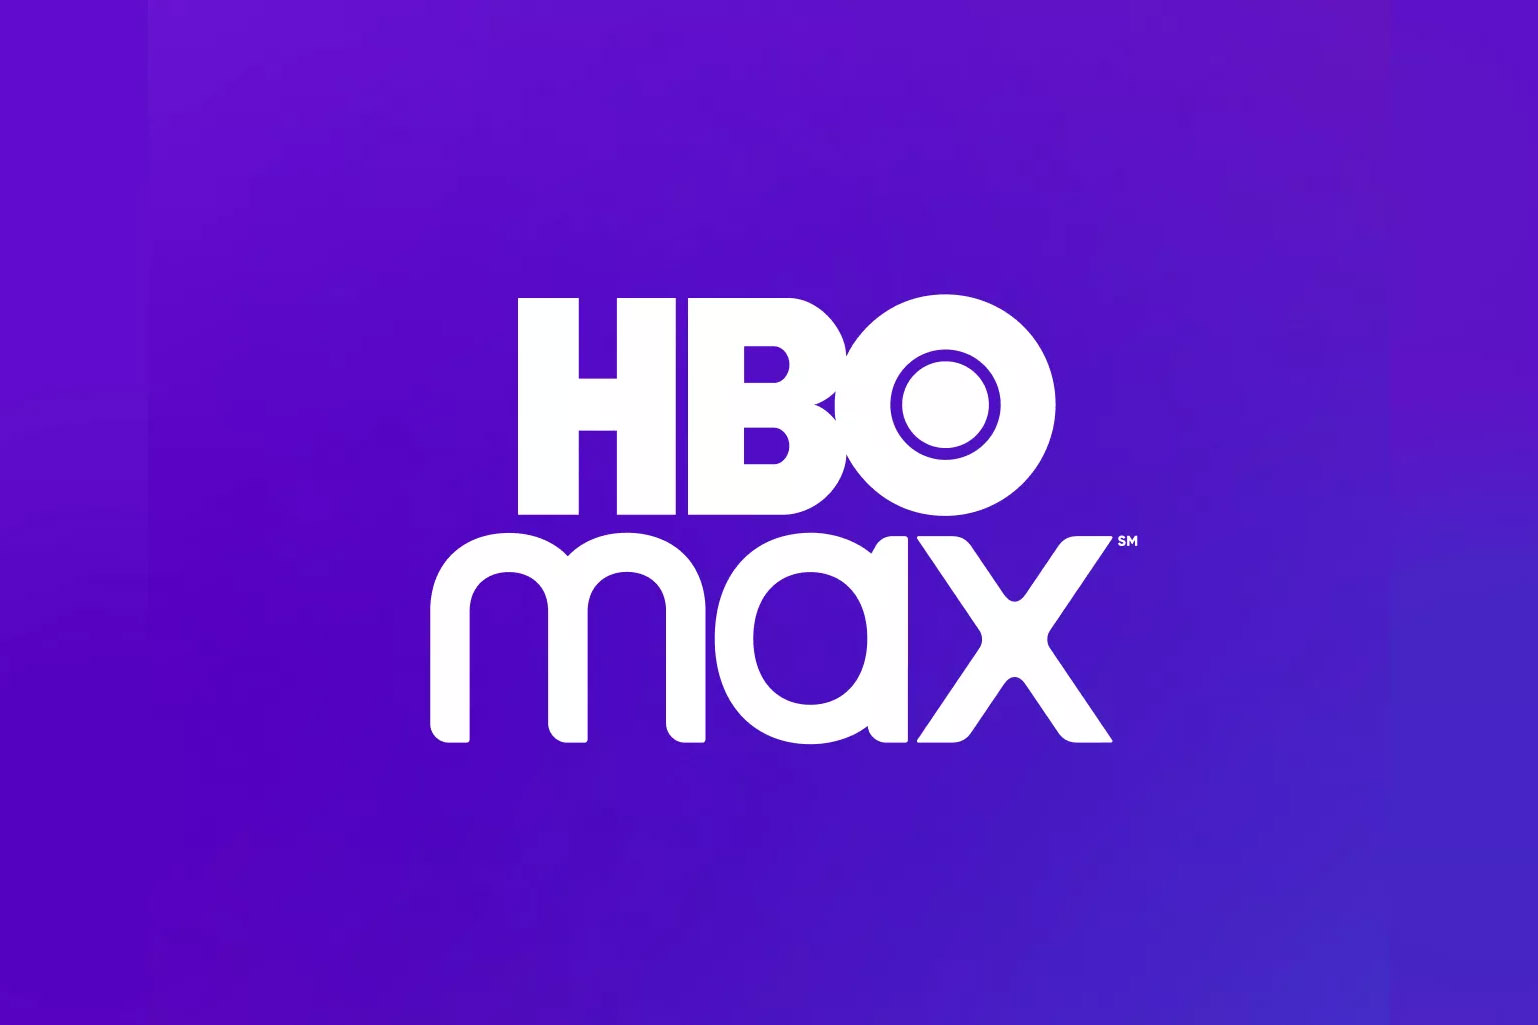 Os planos de dados da AT&T são ilimitados para HBO Max, não para Disney + ou Netflix